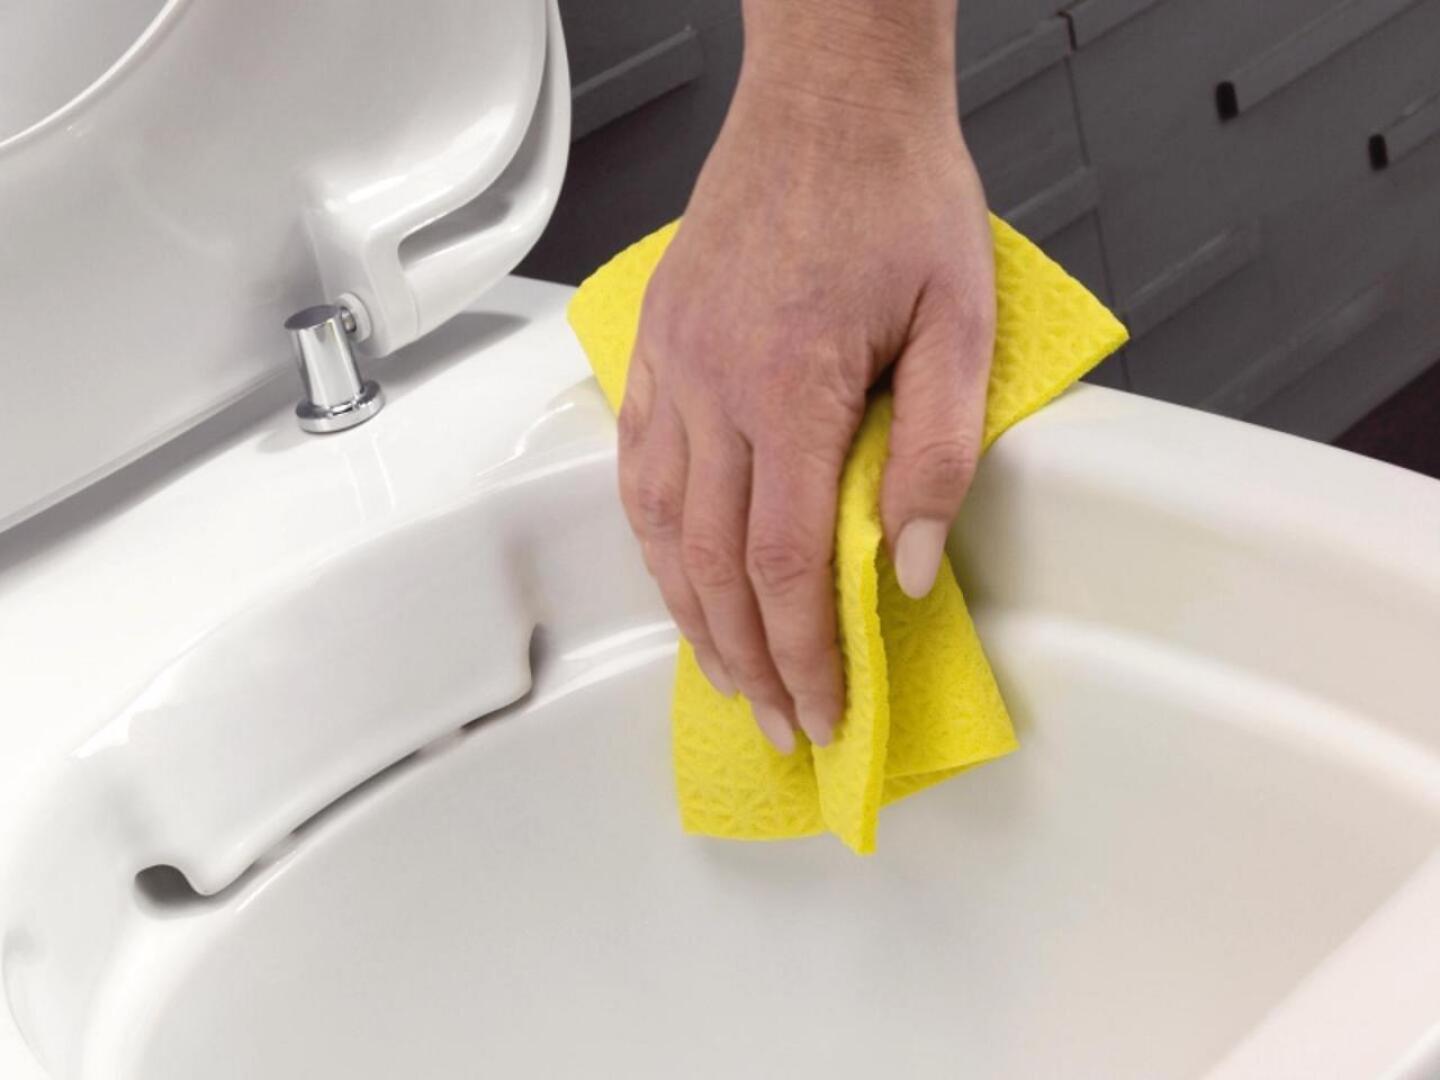 Ylivieskan Vuokra-asunnot ohjeistavat pois muuttajia pesemään ja desinfioimaan huolellisesti kylpyhuoneessa muun muassa wc-istuimen, altaan ja lattiakaivot.